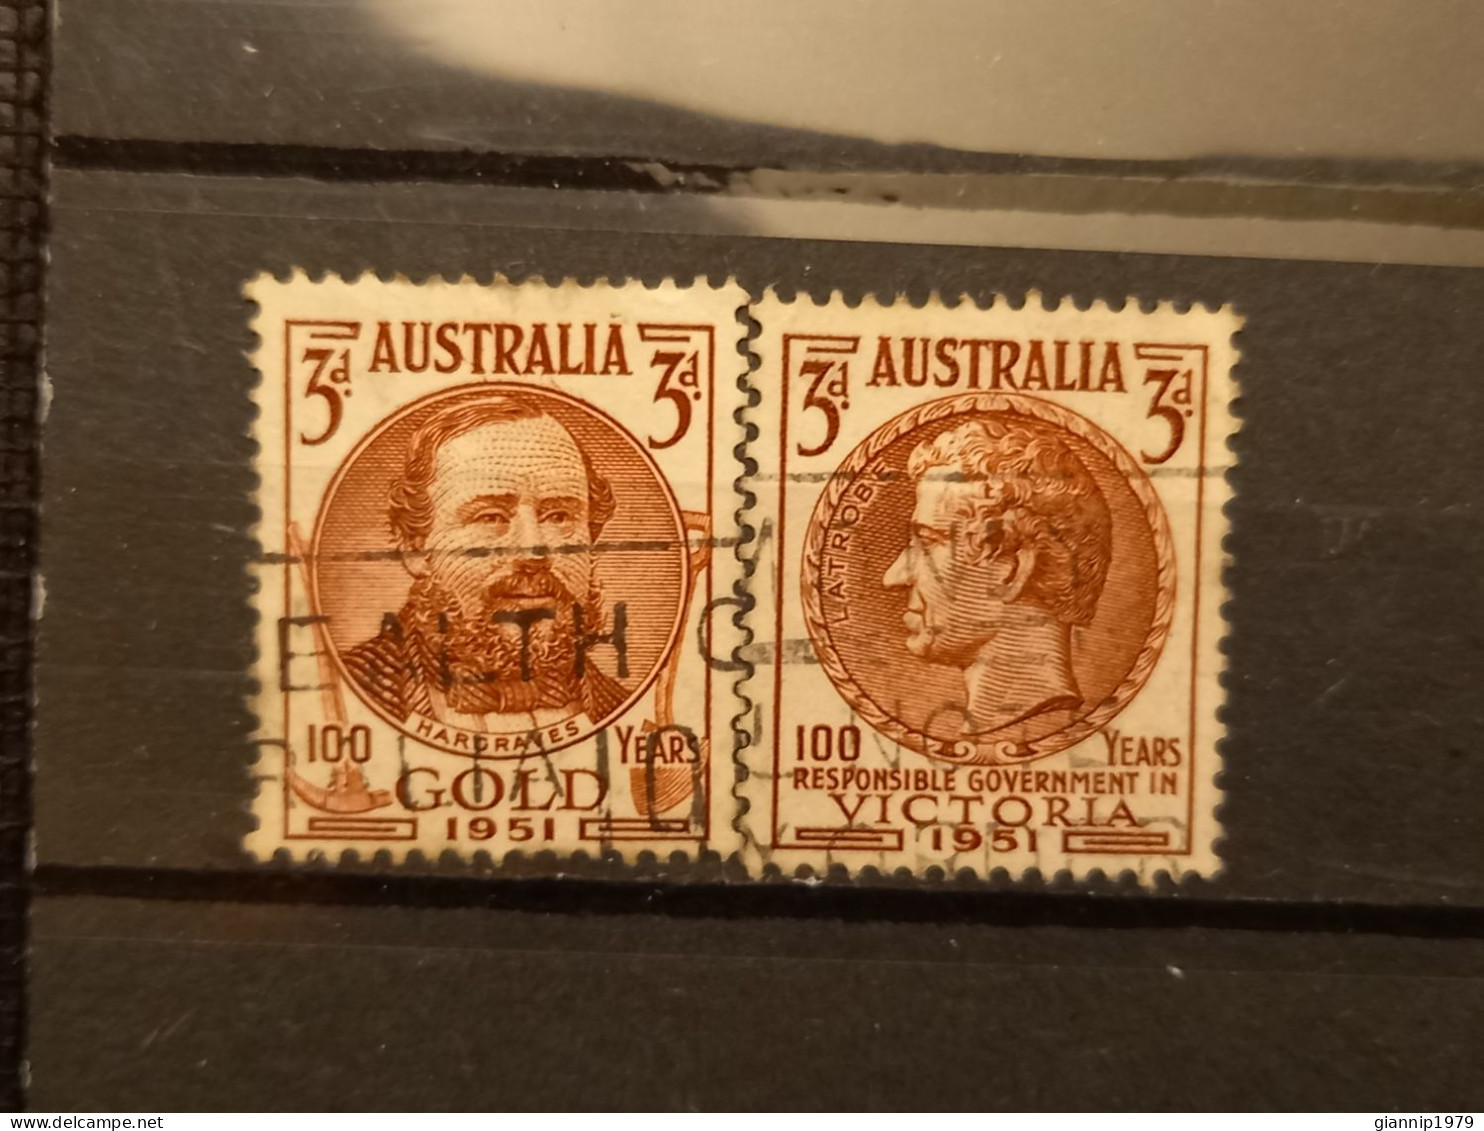 FRANCOBOLLI STAMPS AUSTRALIA AUSTRALIAN 1951 USED SERIE COMPLETE COMPLETA 100 ANNI ANNIVERSARY ORO VICTORIA OBLITERE' - Oblitérés